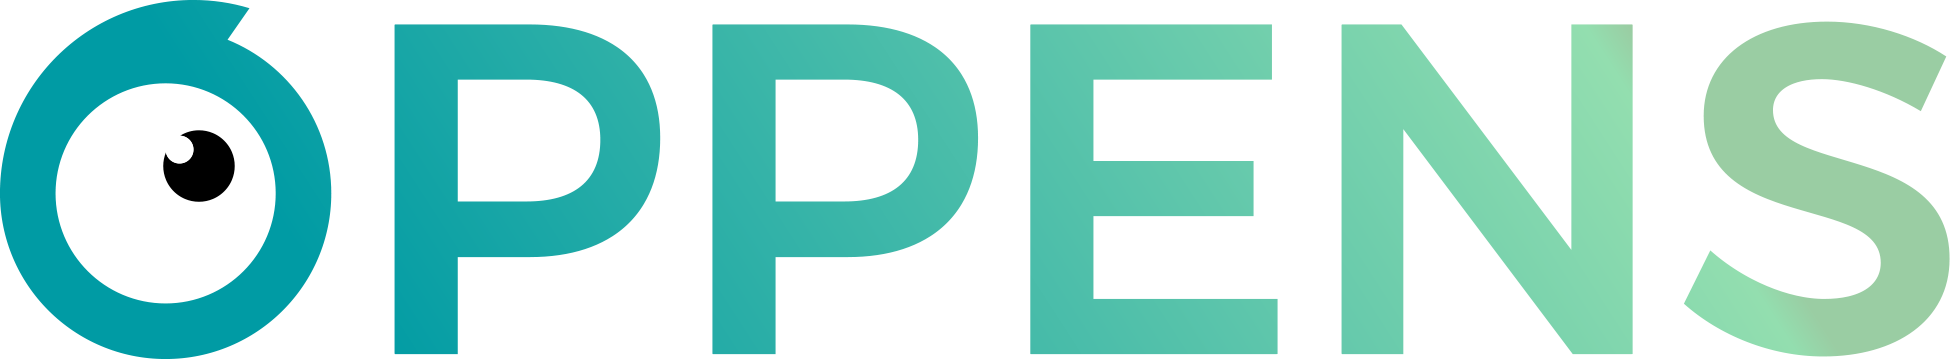 logo-oppens